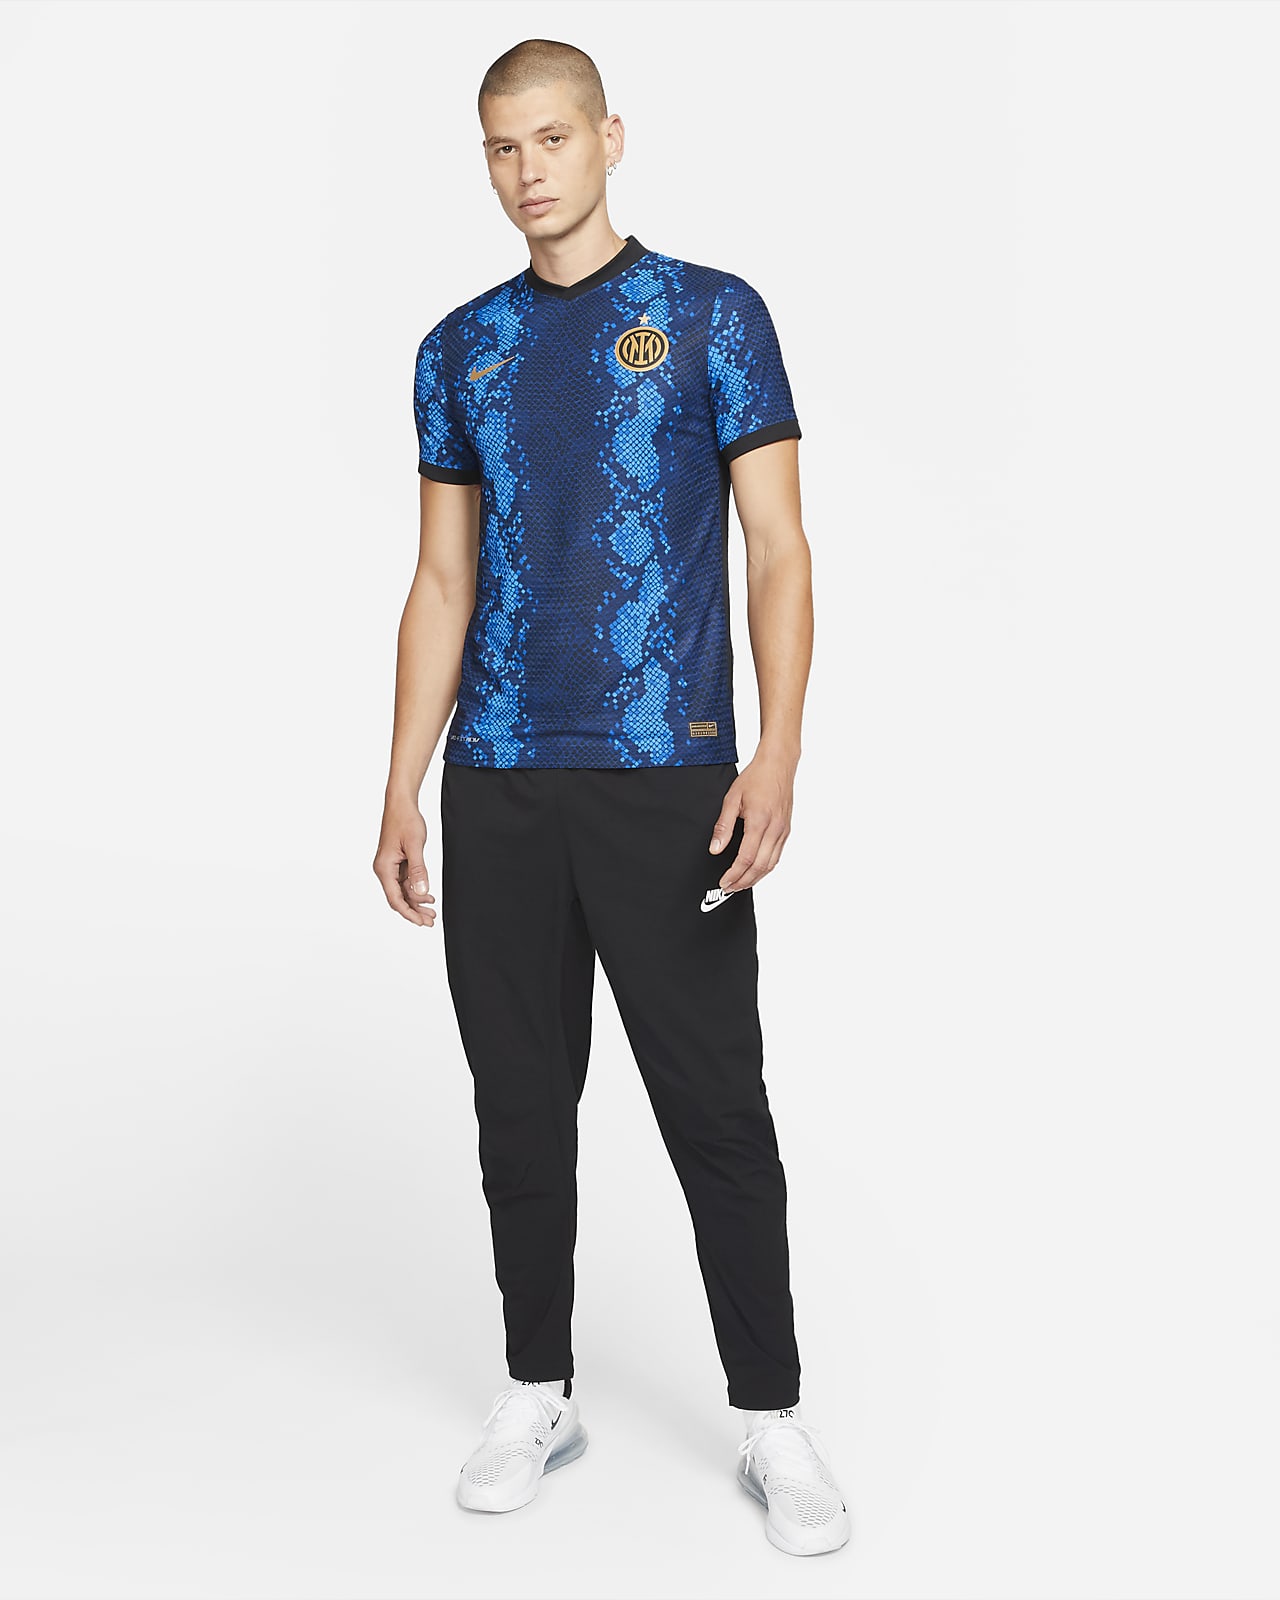 Inter Milan 2021-22 Nike Home Kit | 21/22 Kits | Football shirt blog